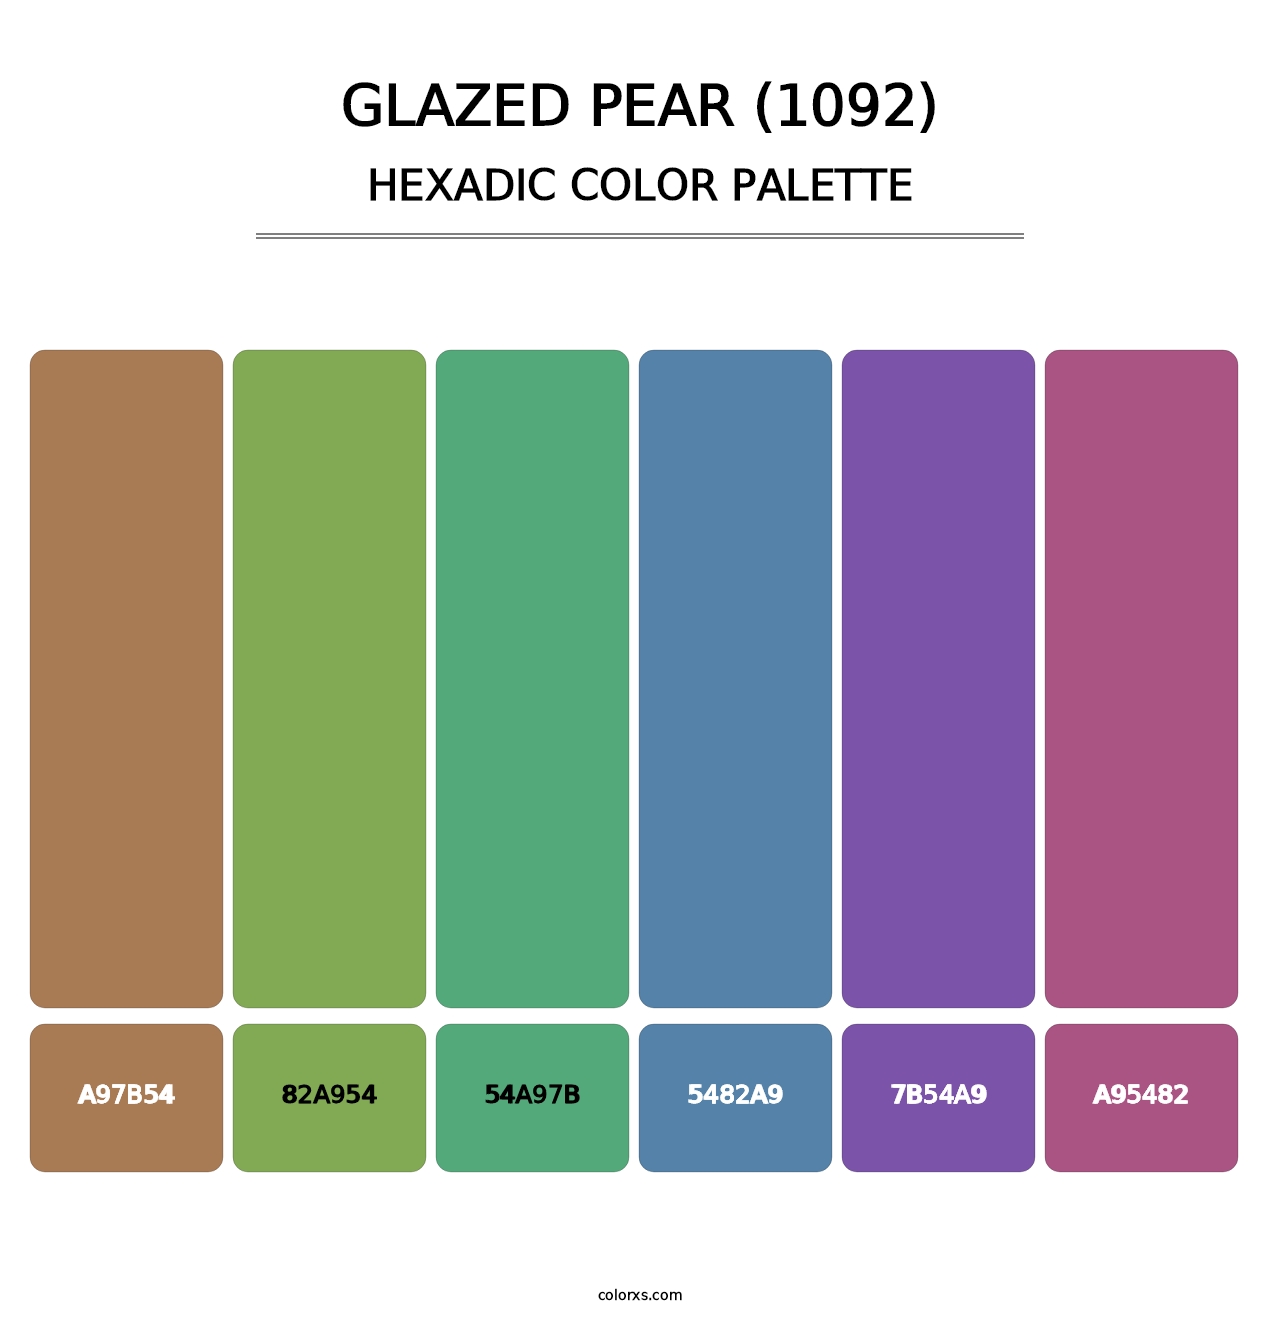 Glazed Pear (1092) - Hexadic Color Palette